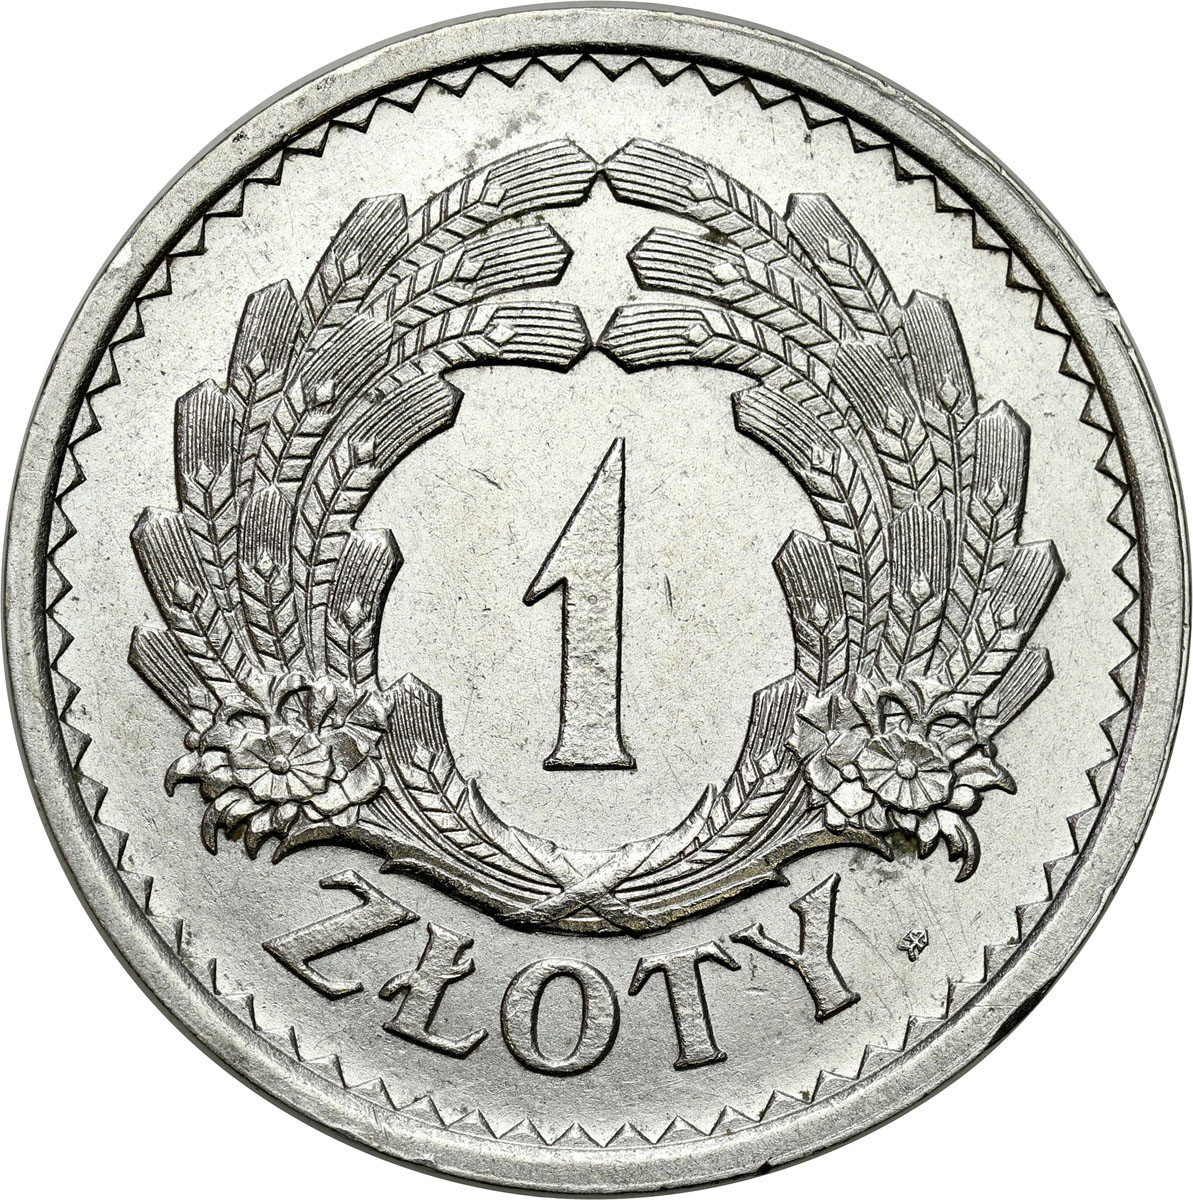 PRÓBA. 1 złoty 1928, bez napisu PRÓBA- nakład tylko 15 egz. - PIĘKNE